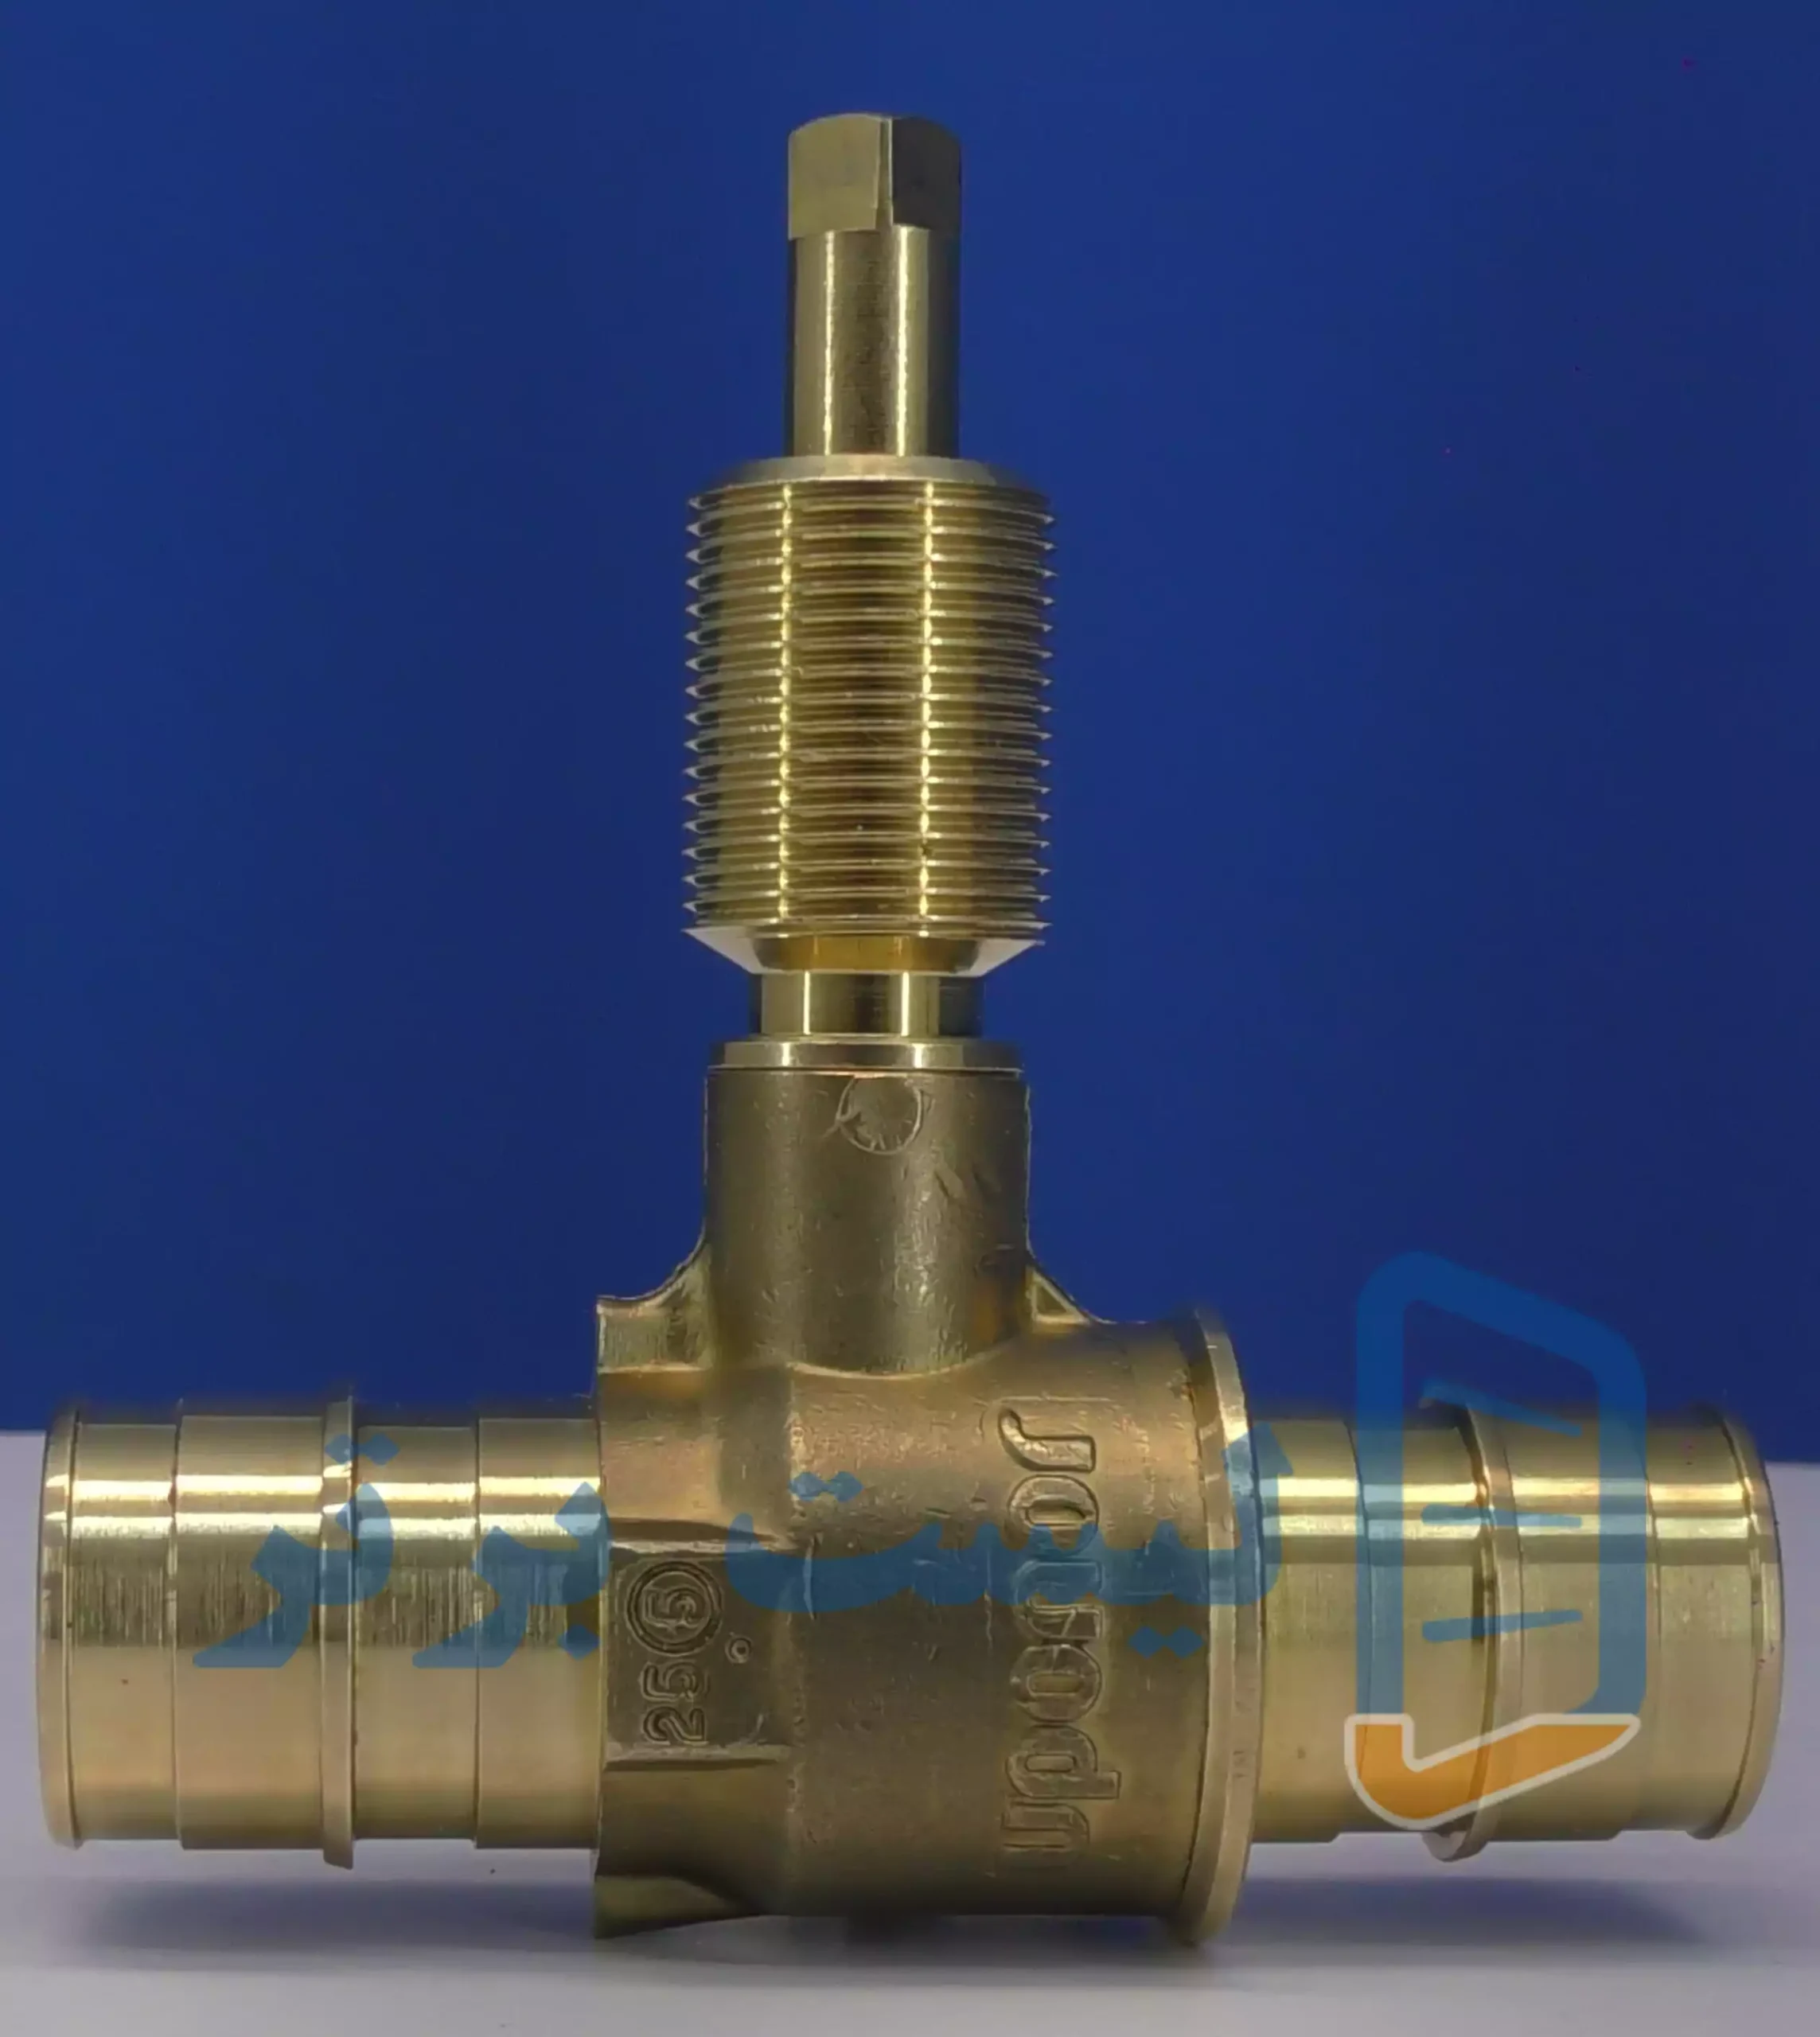 بدنه شیر توپی توکار Q&E یوپونور (Uponor) uponor Q&E conceal ball valve